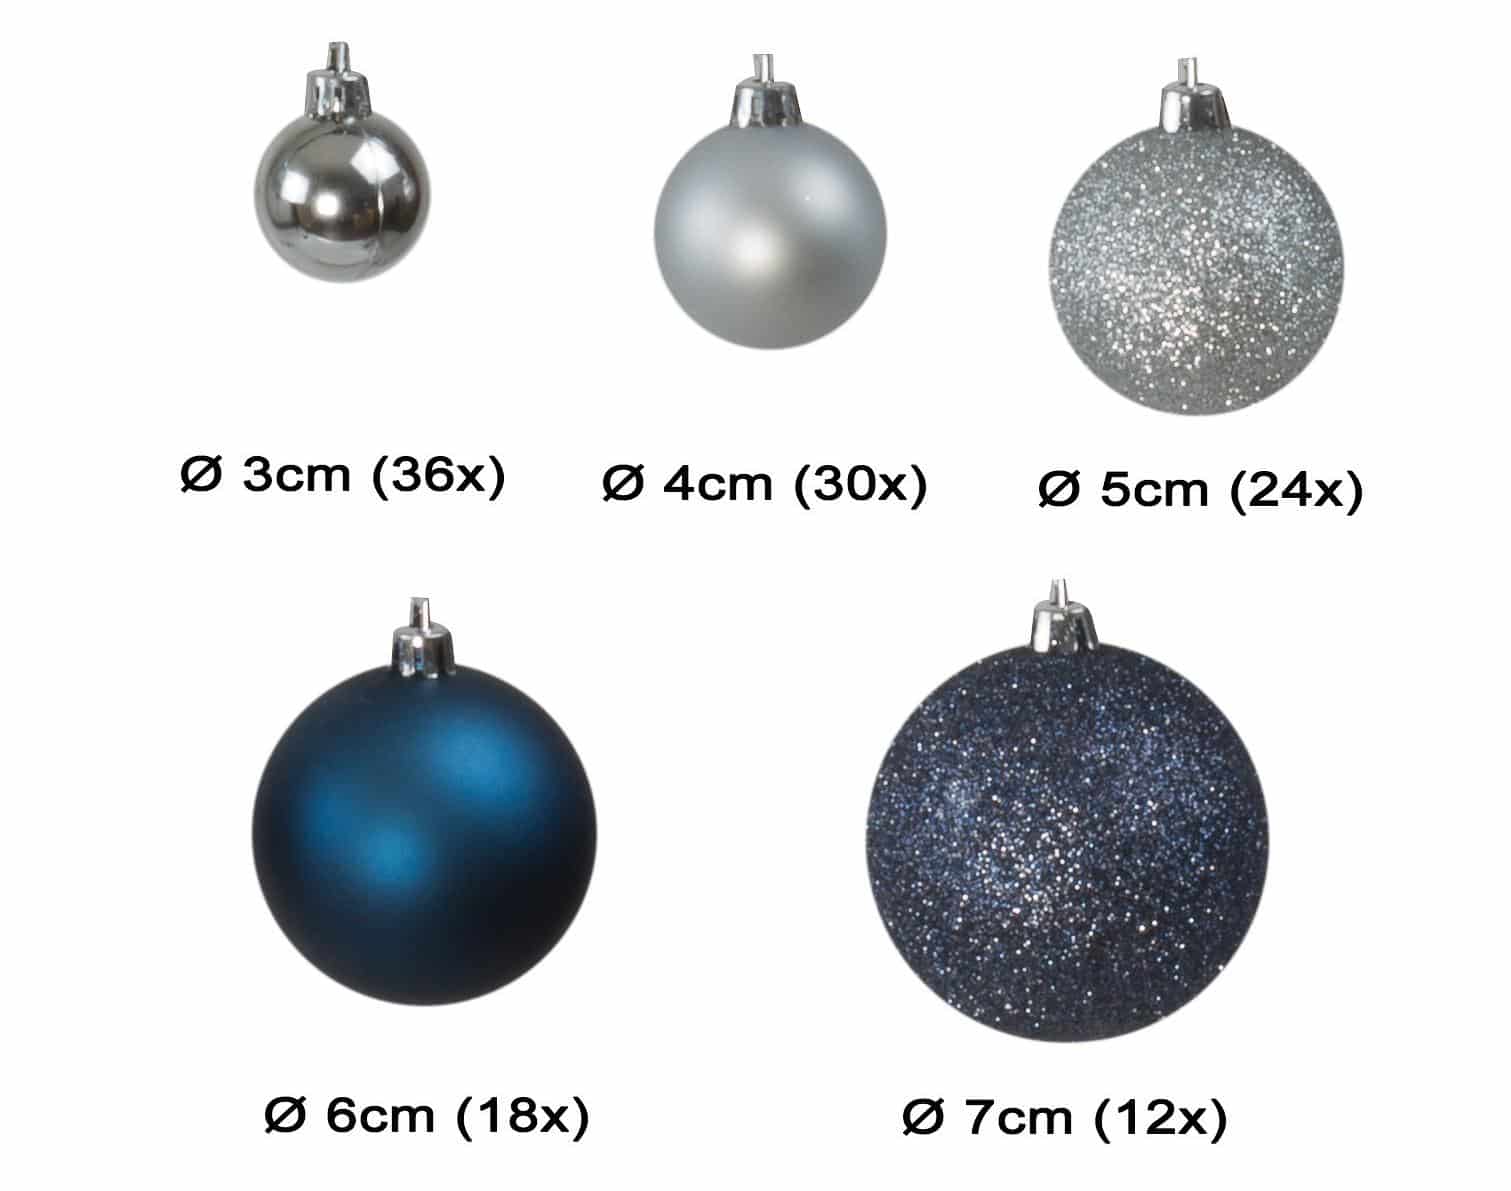 Kunststof Kerstballen set 120 ballen Binnen/Buiten - Zilver/Staalblauw